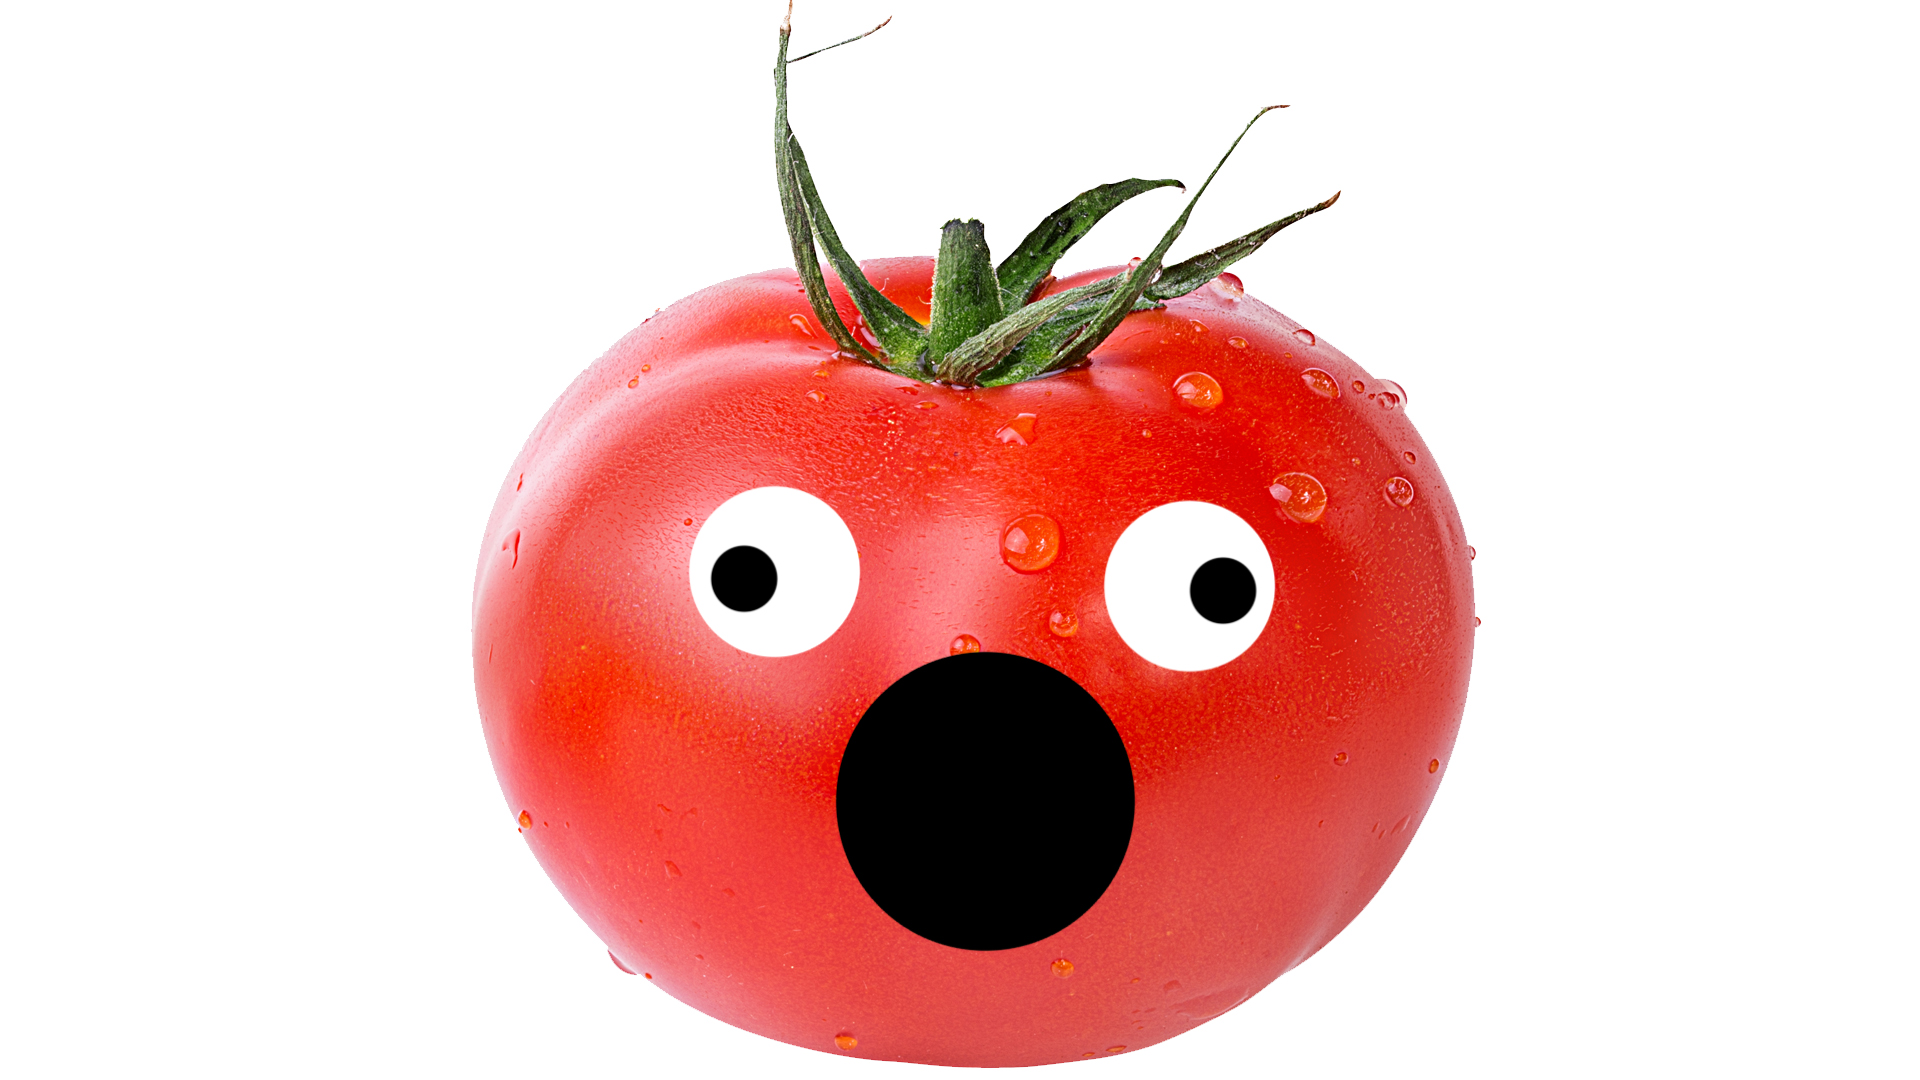 A tomato